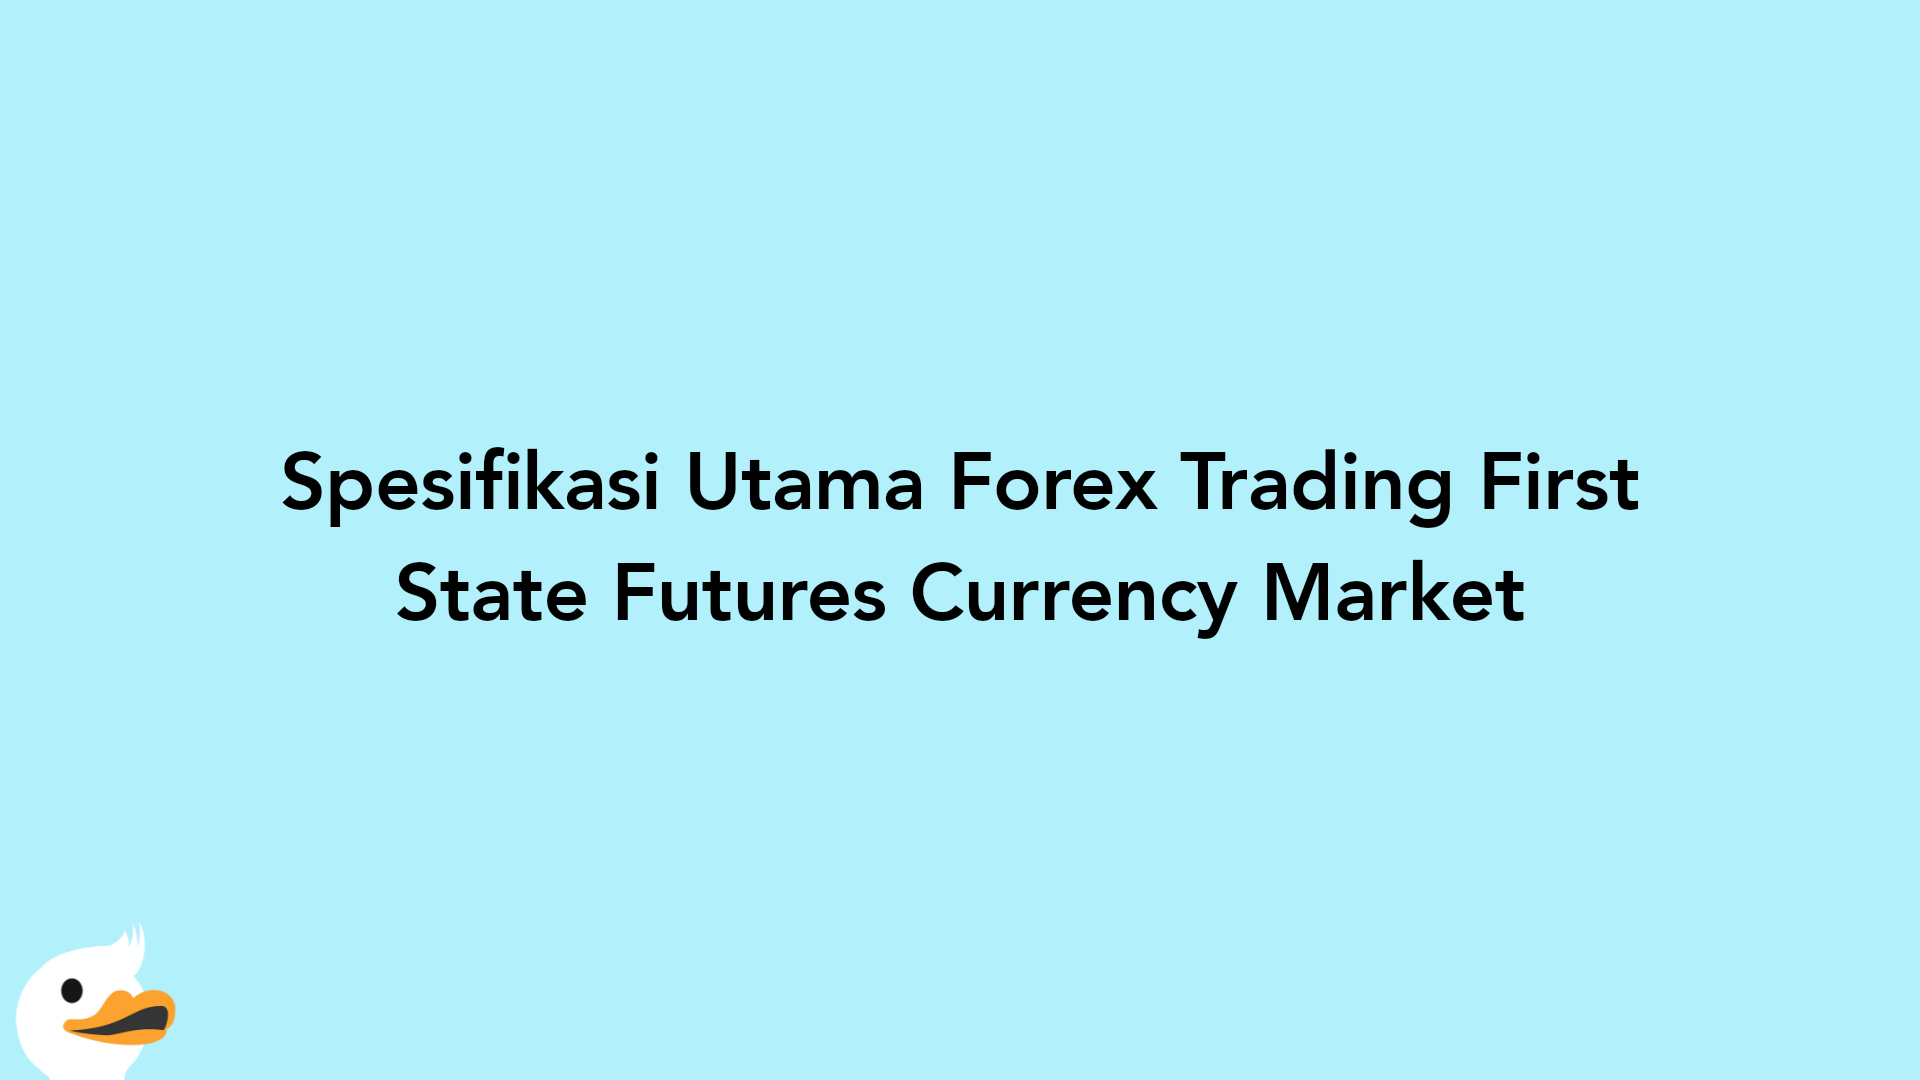 Spesifikasi Utama Forex Trading First State Futures Currency Market